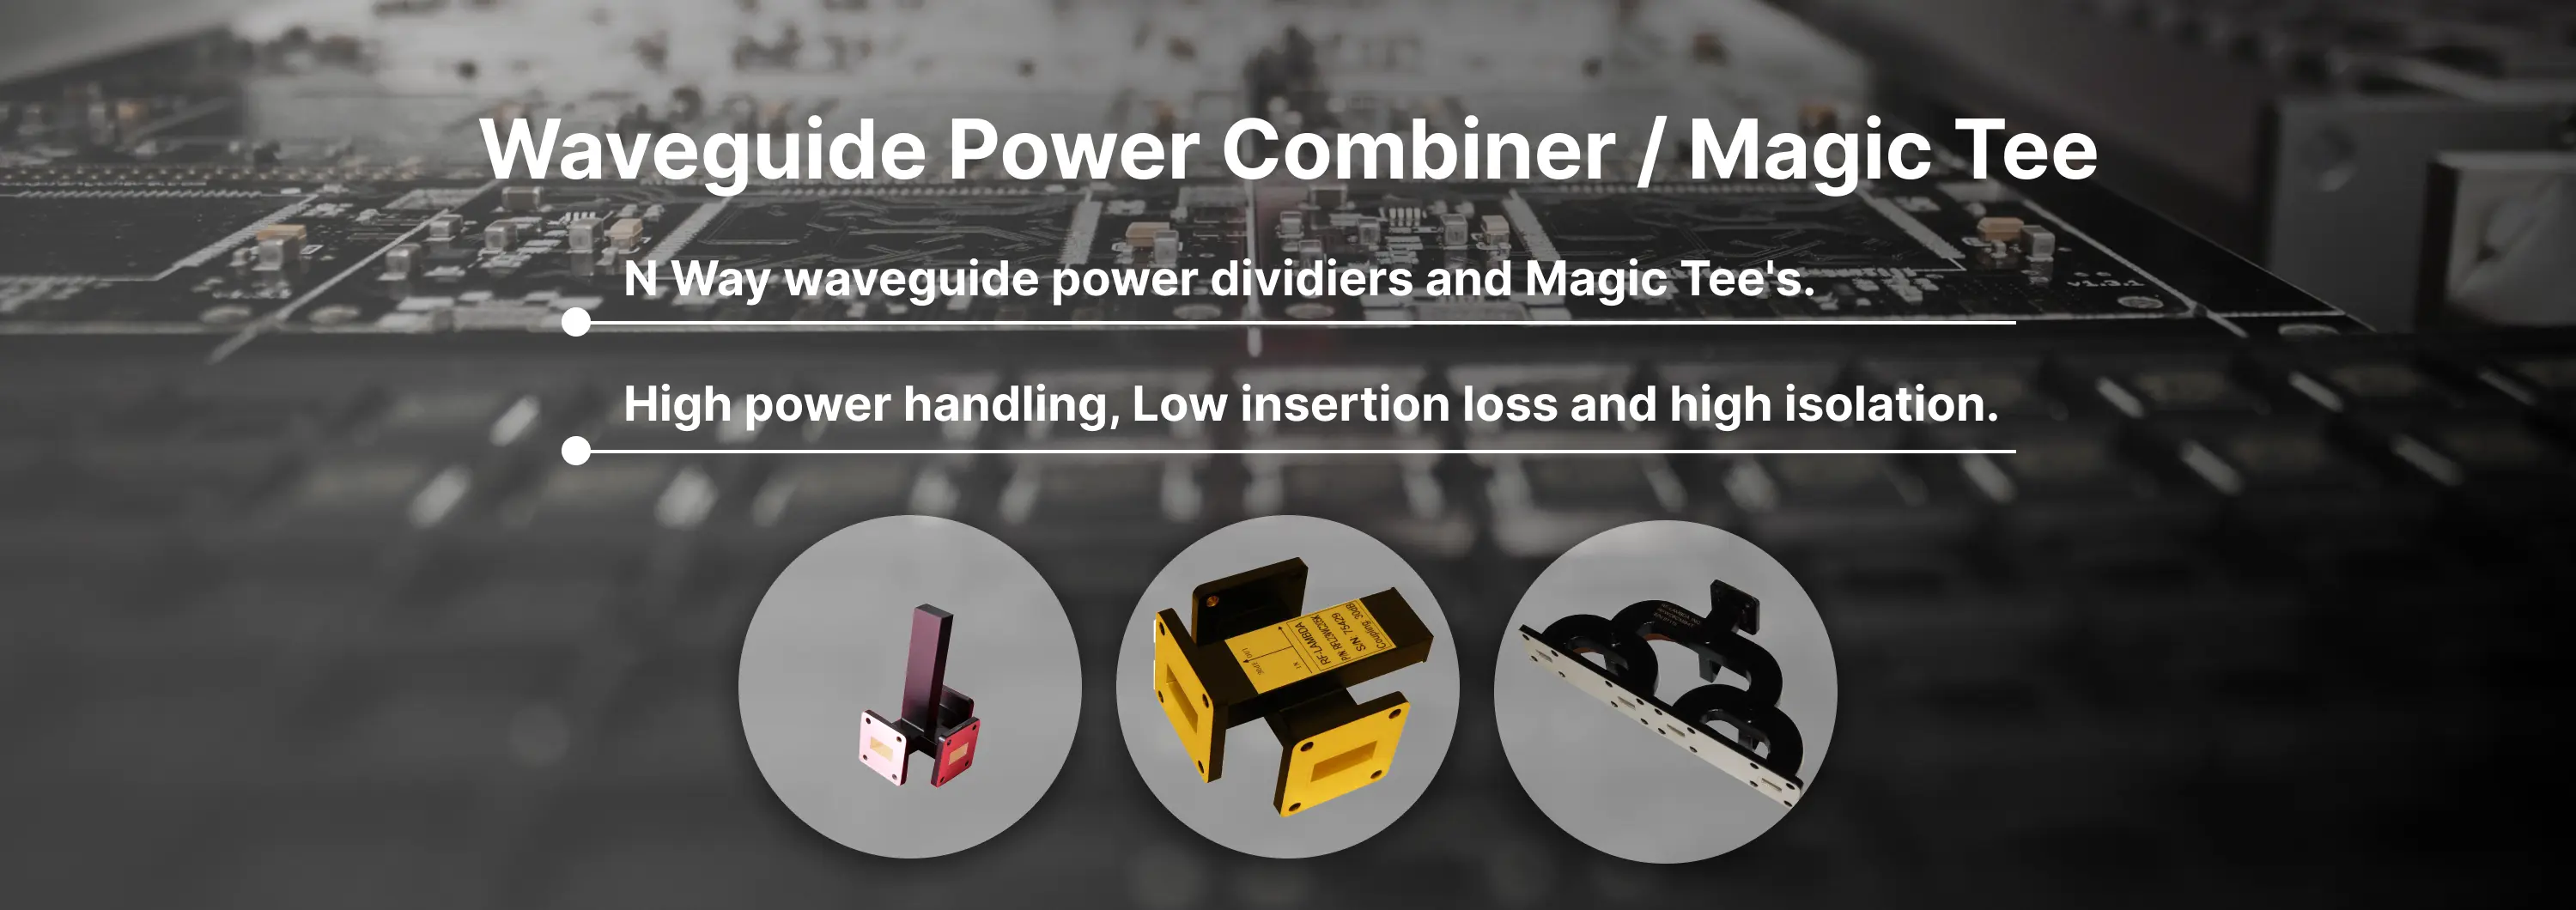 Waveguide Power Combiner / Magic Tee Banner